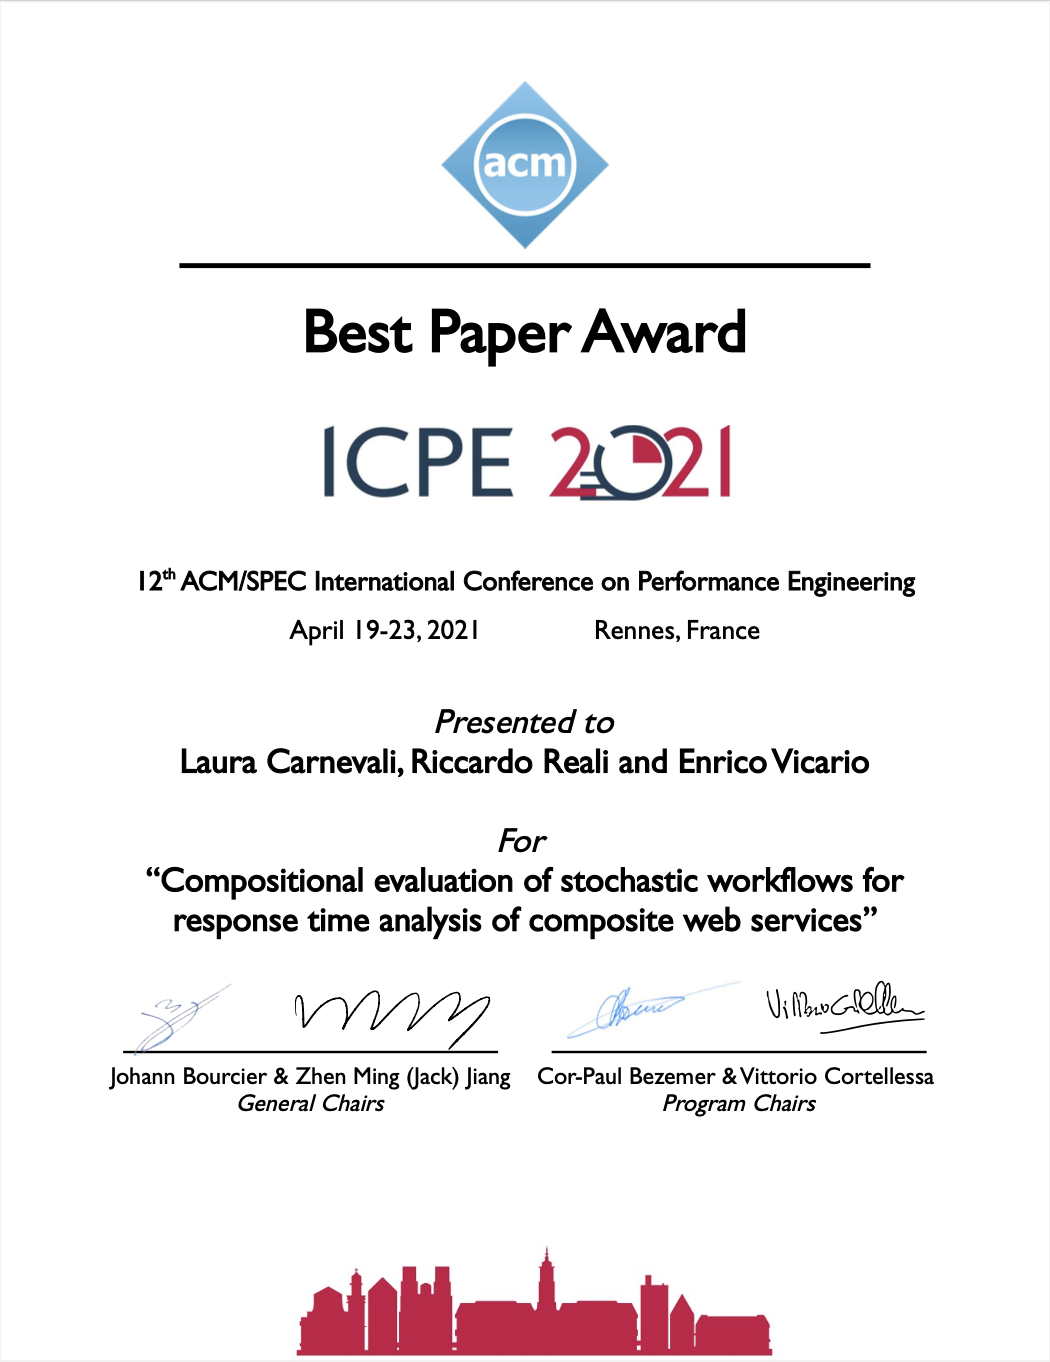 ICPE 2021 Award